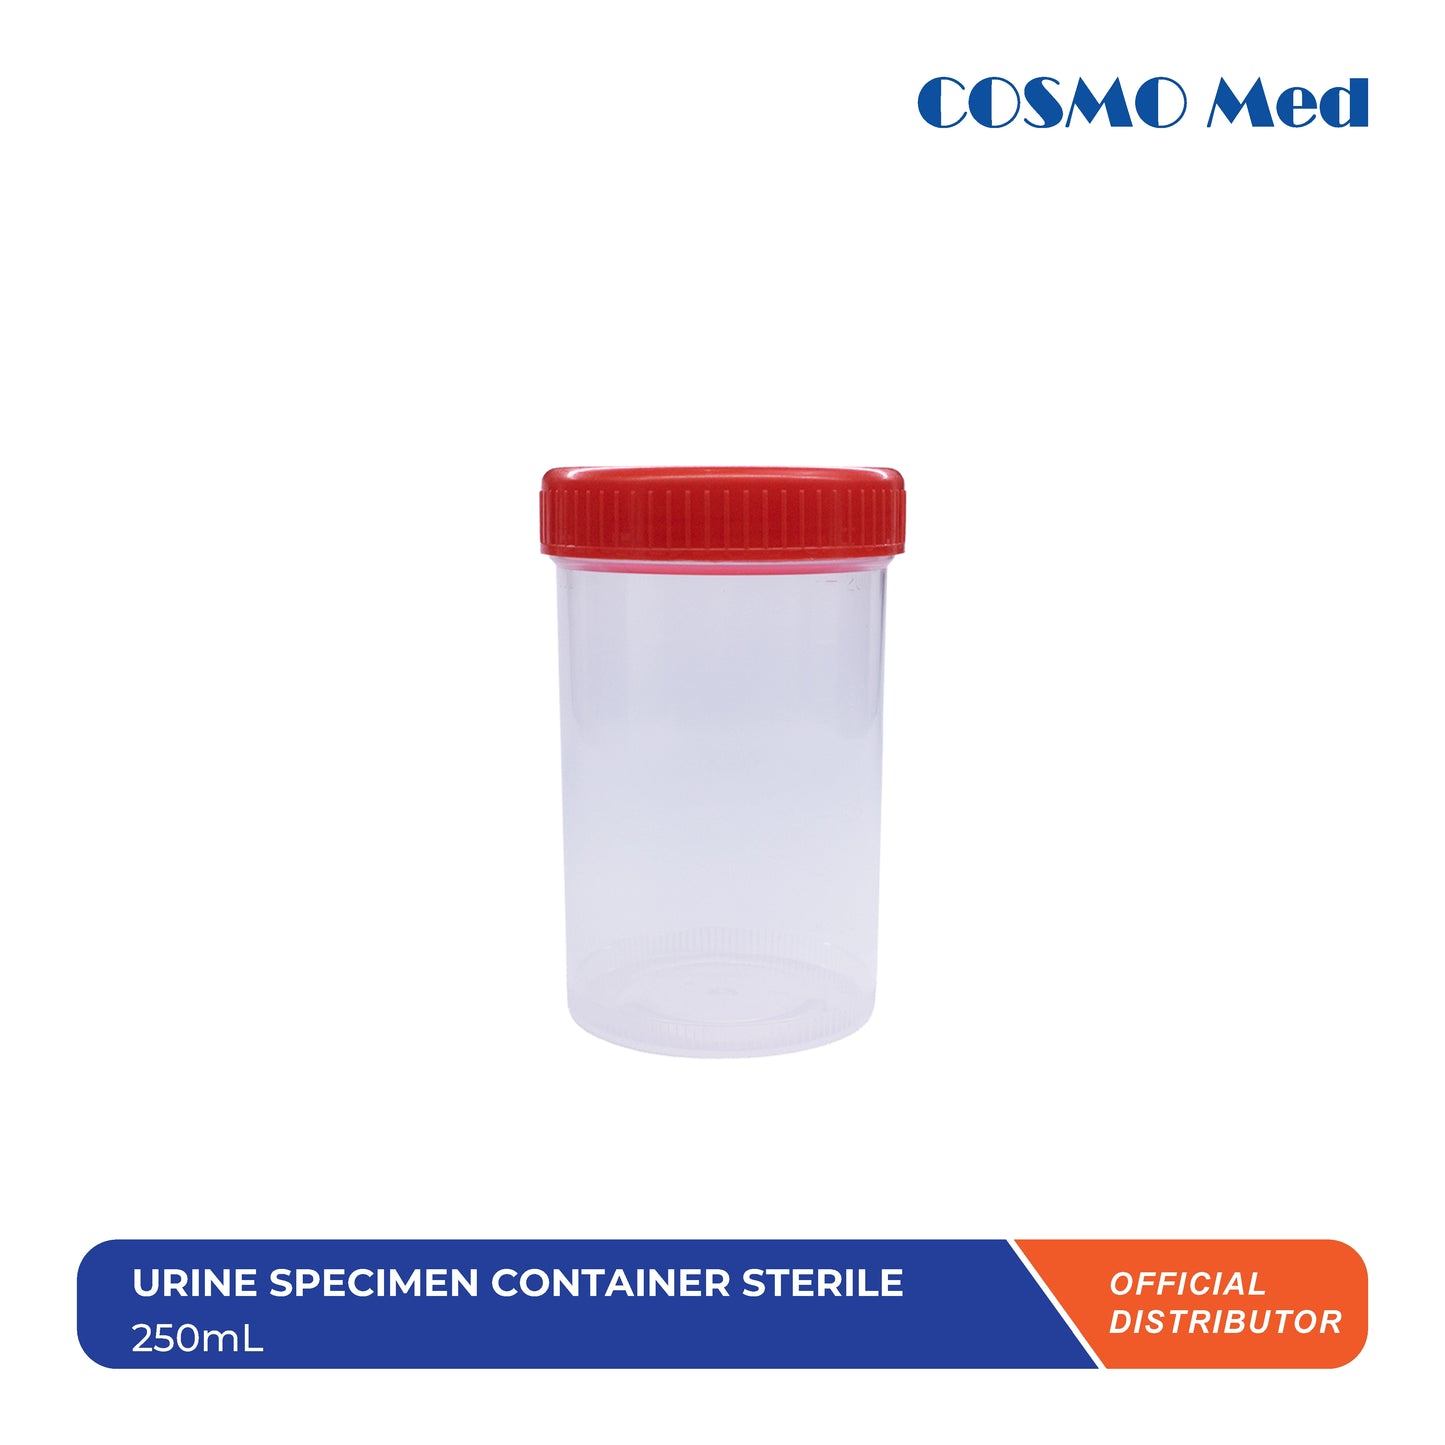 Urine Specimen Container Sterile